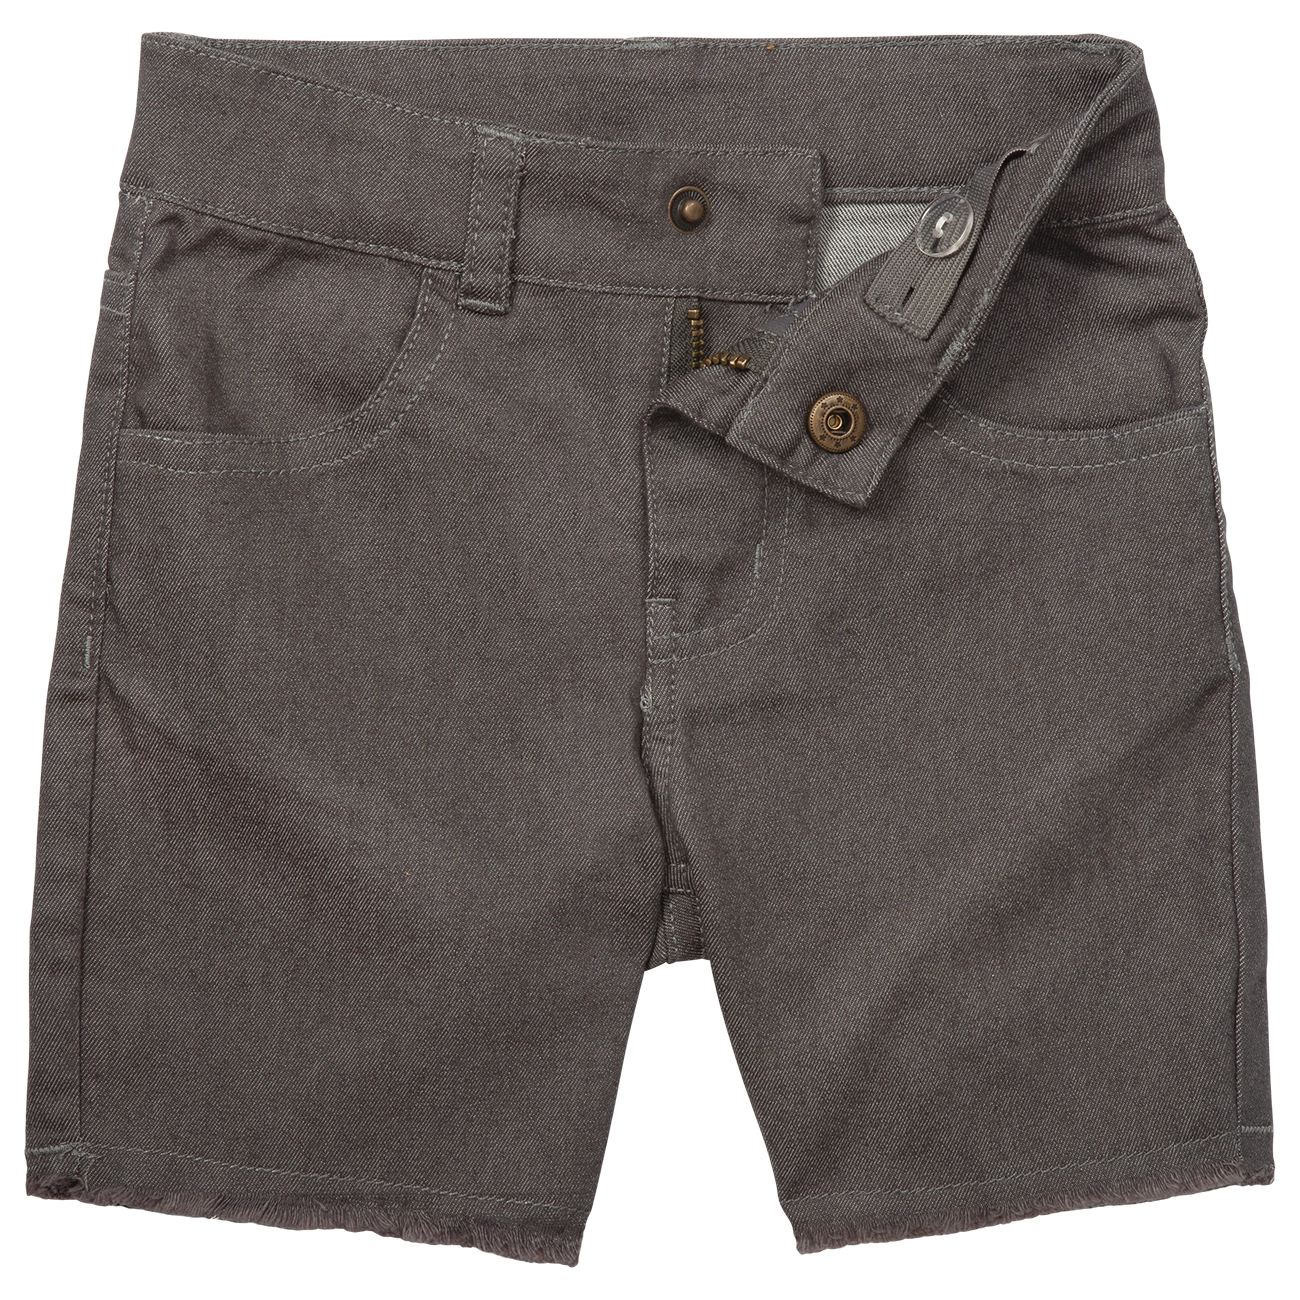 Waco Shorts - Grey